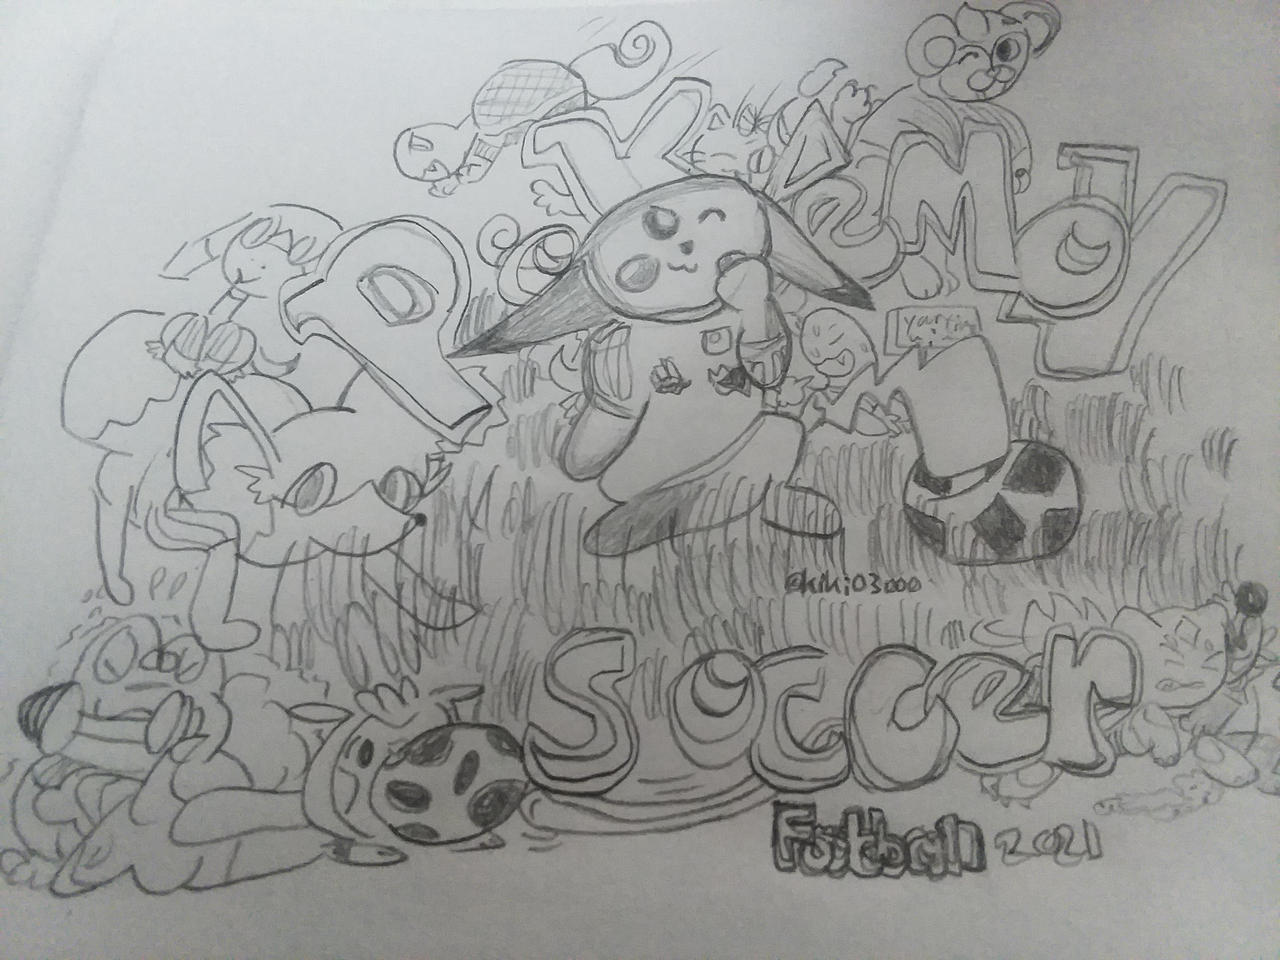 Pokemon Soccer Football - Part 2 (w/ fixed typo!)